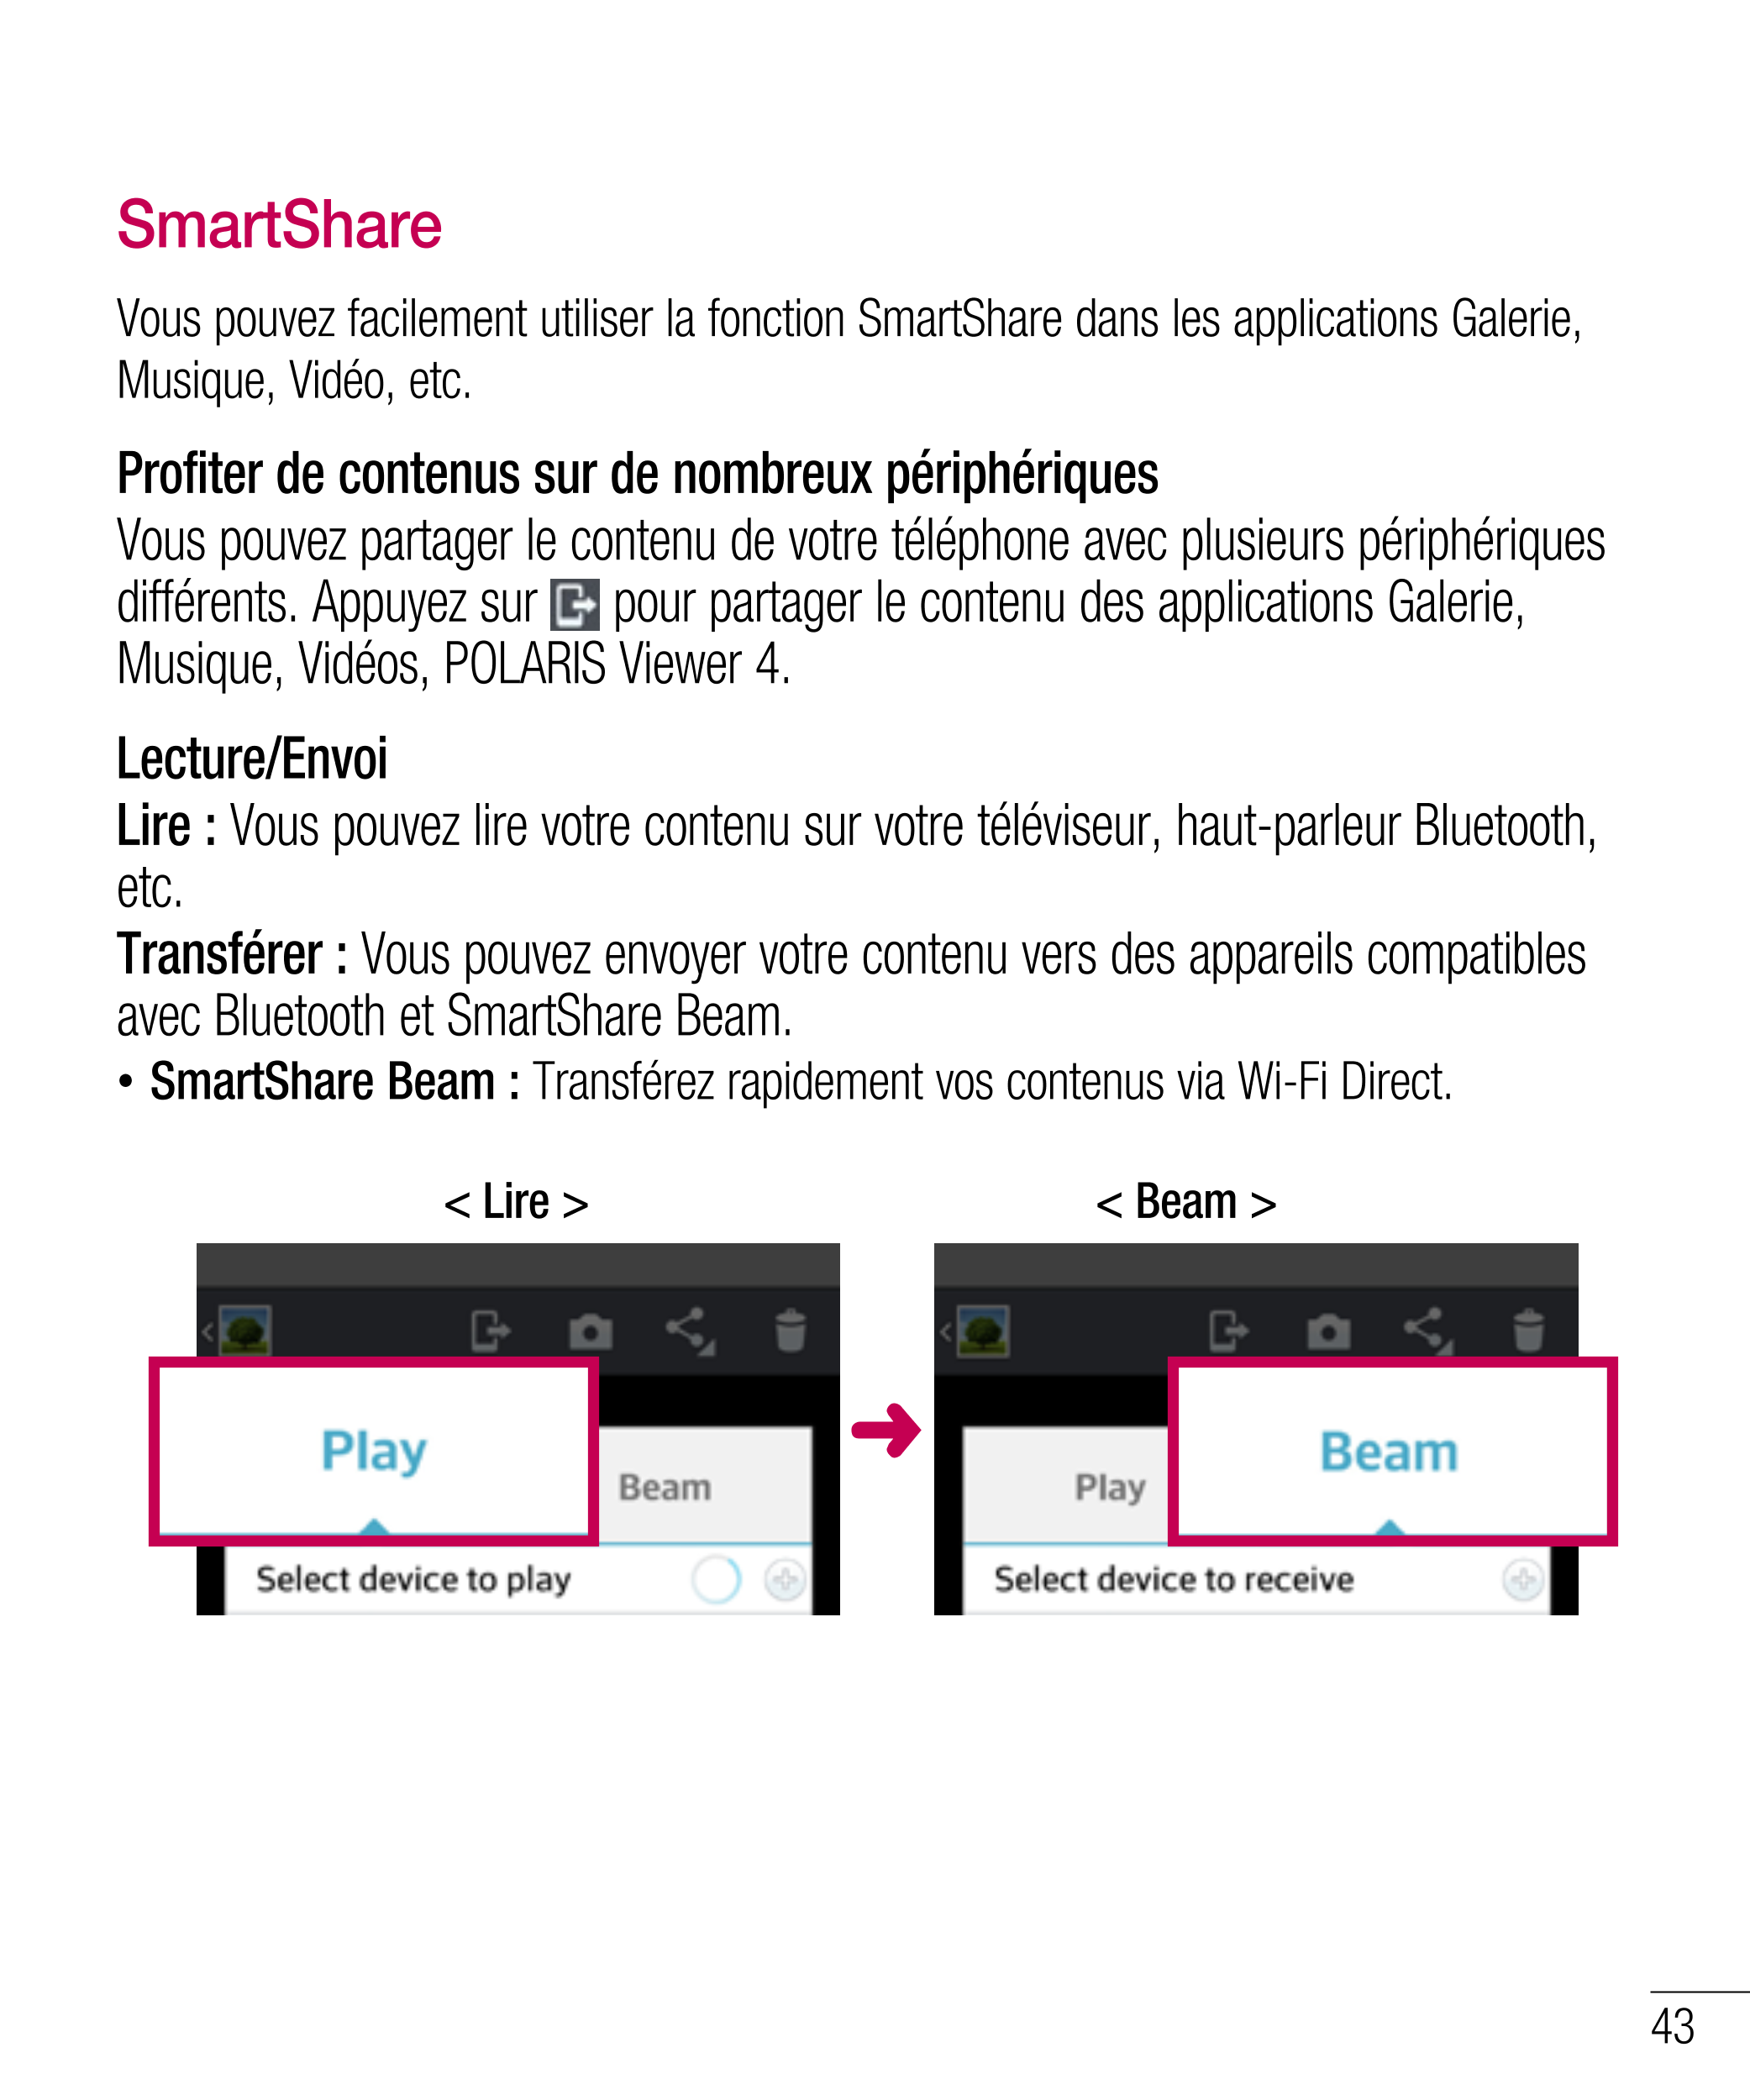 SmartShare
Vous pouvez facilement utiliser la fonction SmartShare dans les applications Galerie, 
Musique, Vidéo, etc.
Profiter 